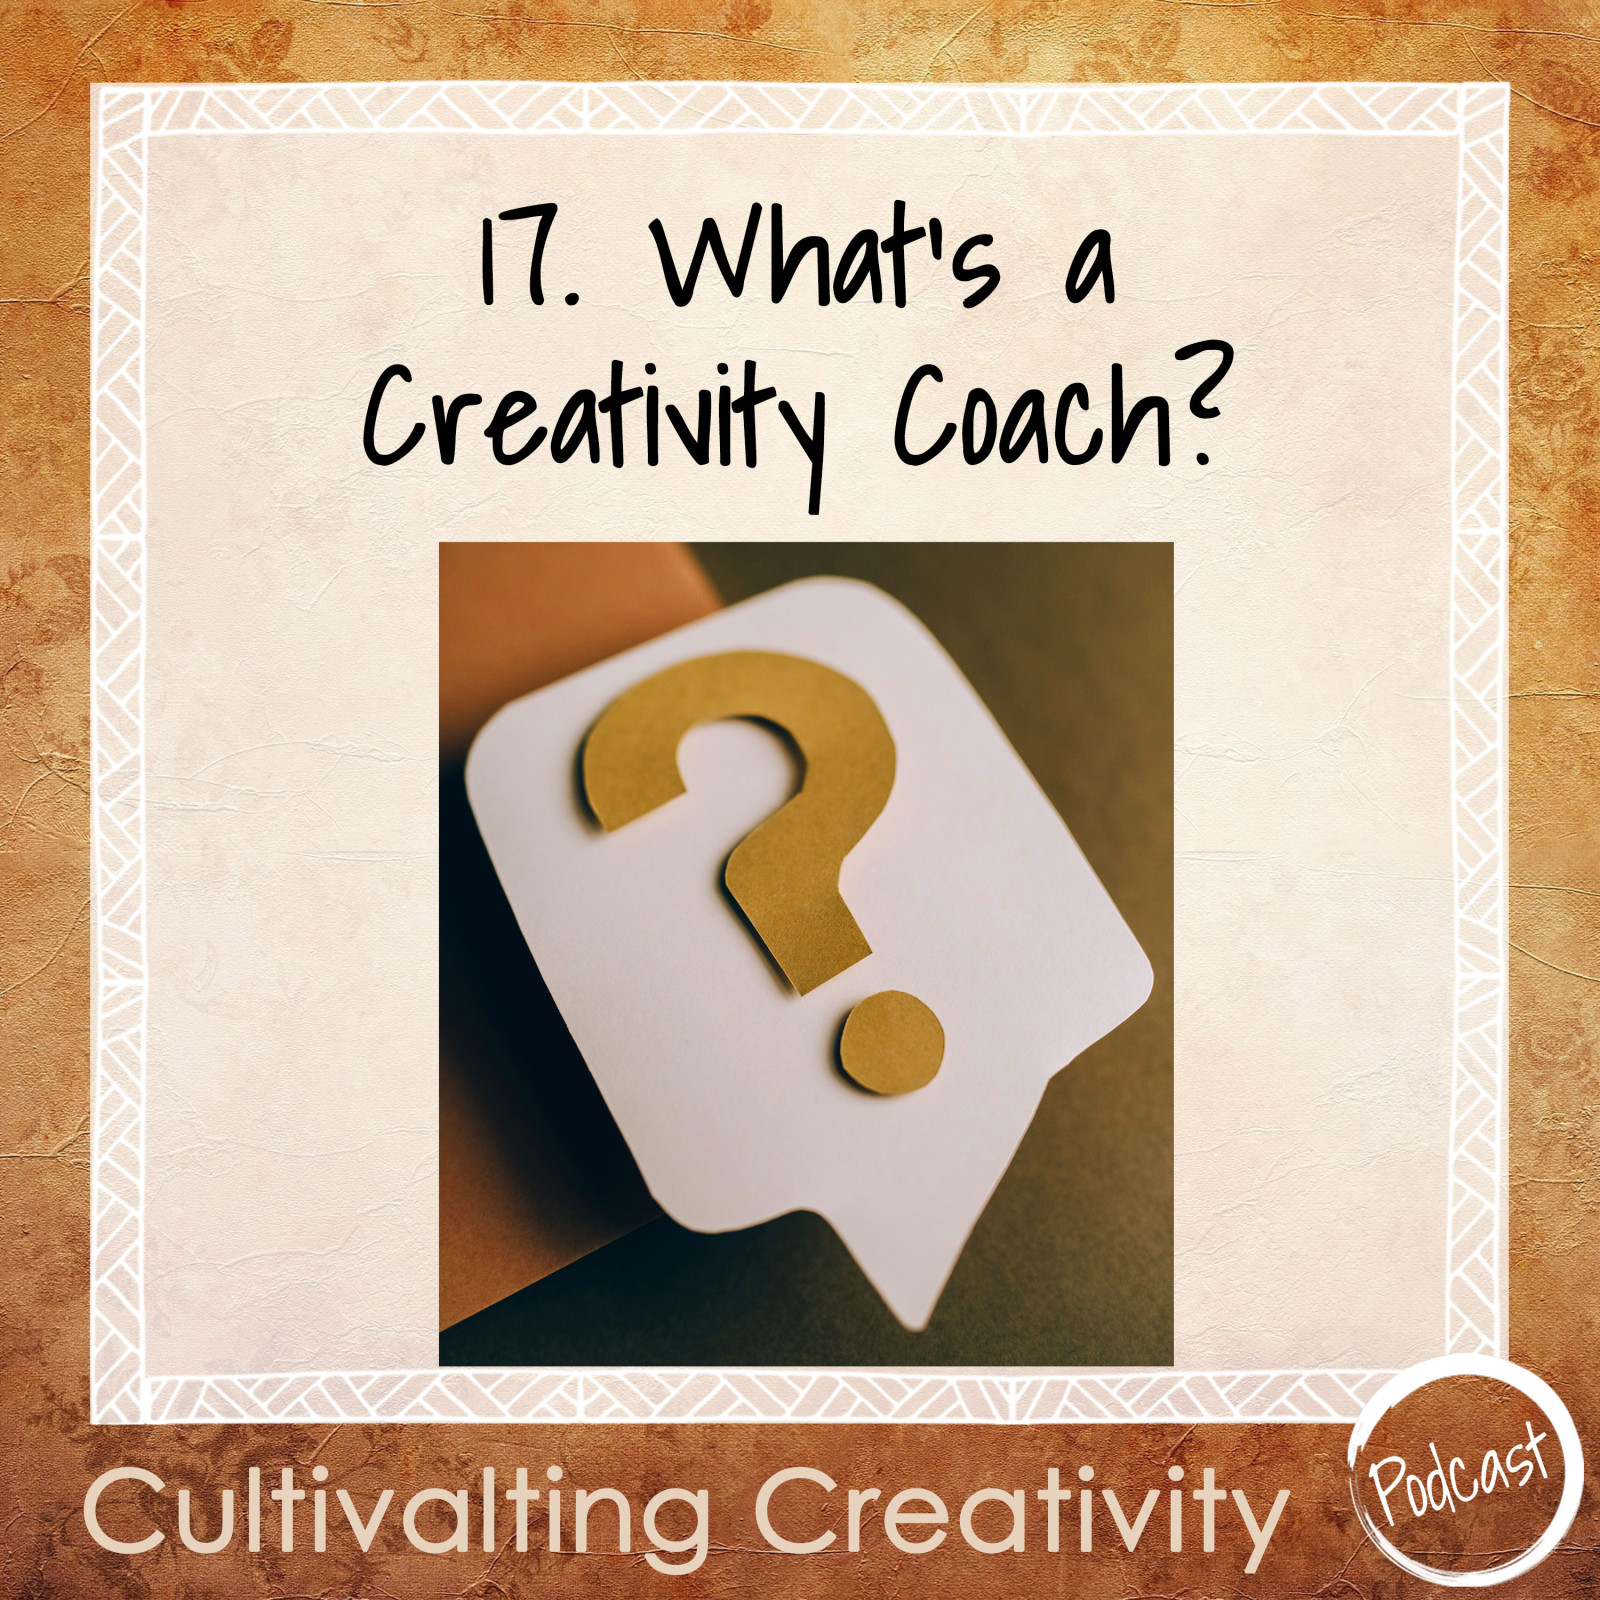 17. What’s a Creativity Coach?